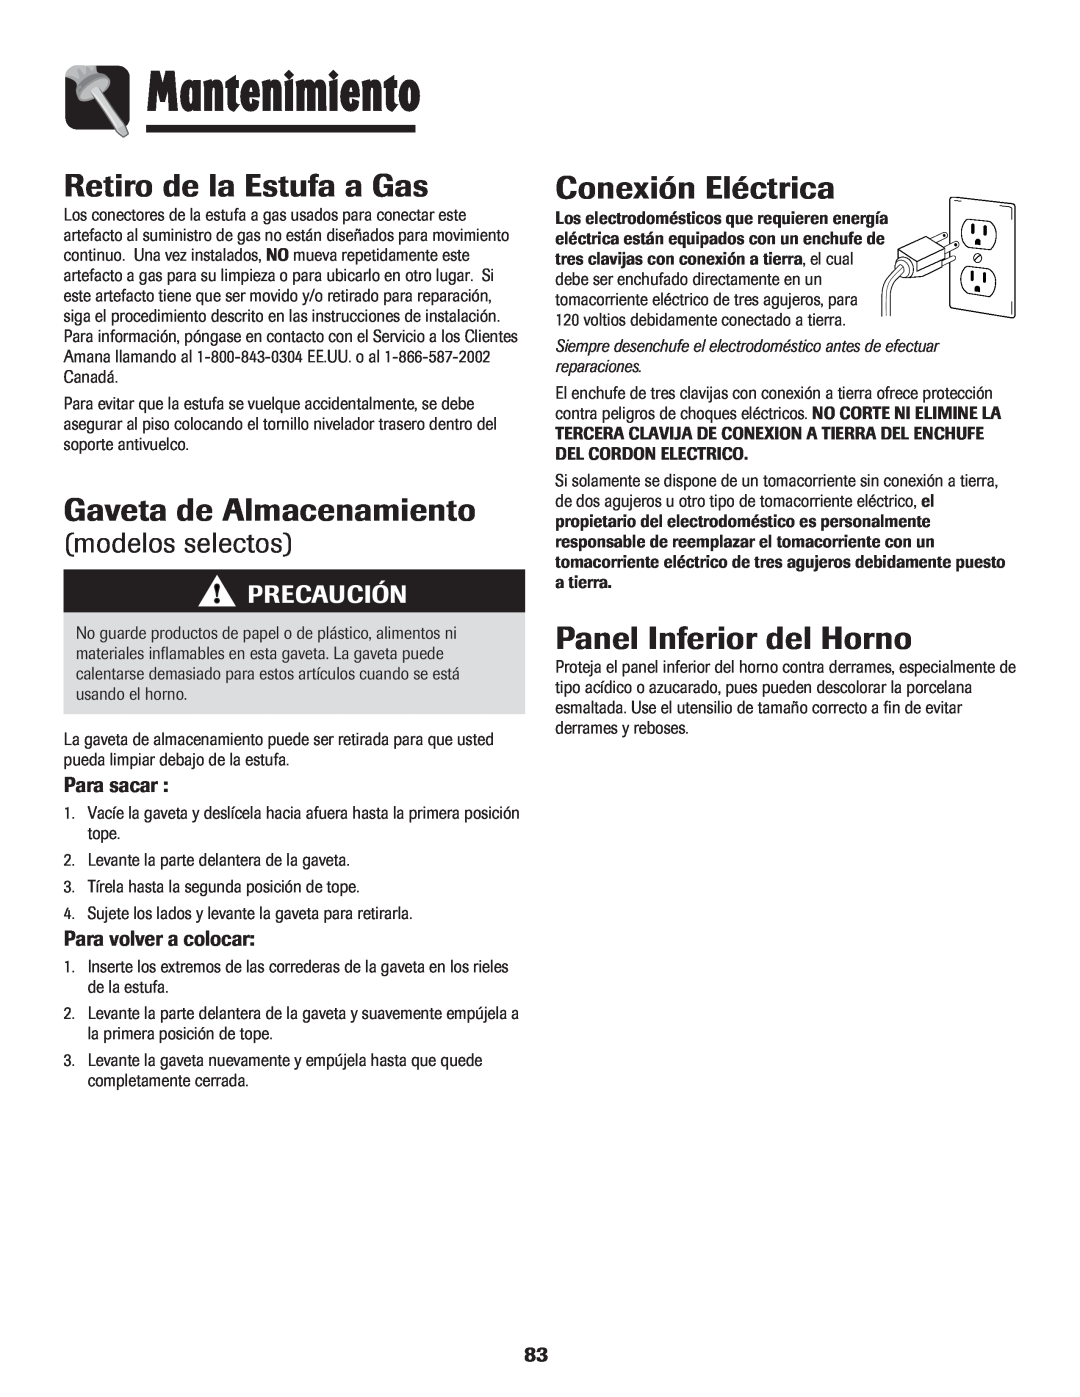 Amana 8113P515-60 manual Retiro de la Estufa a Gas, Gaveta de Almacenamiento, Conexión Eléctrica, Panel Inferior del Horno 